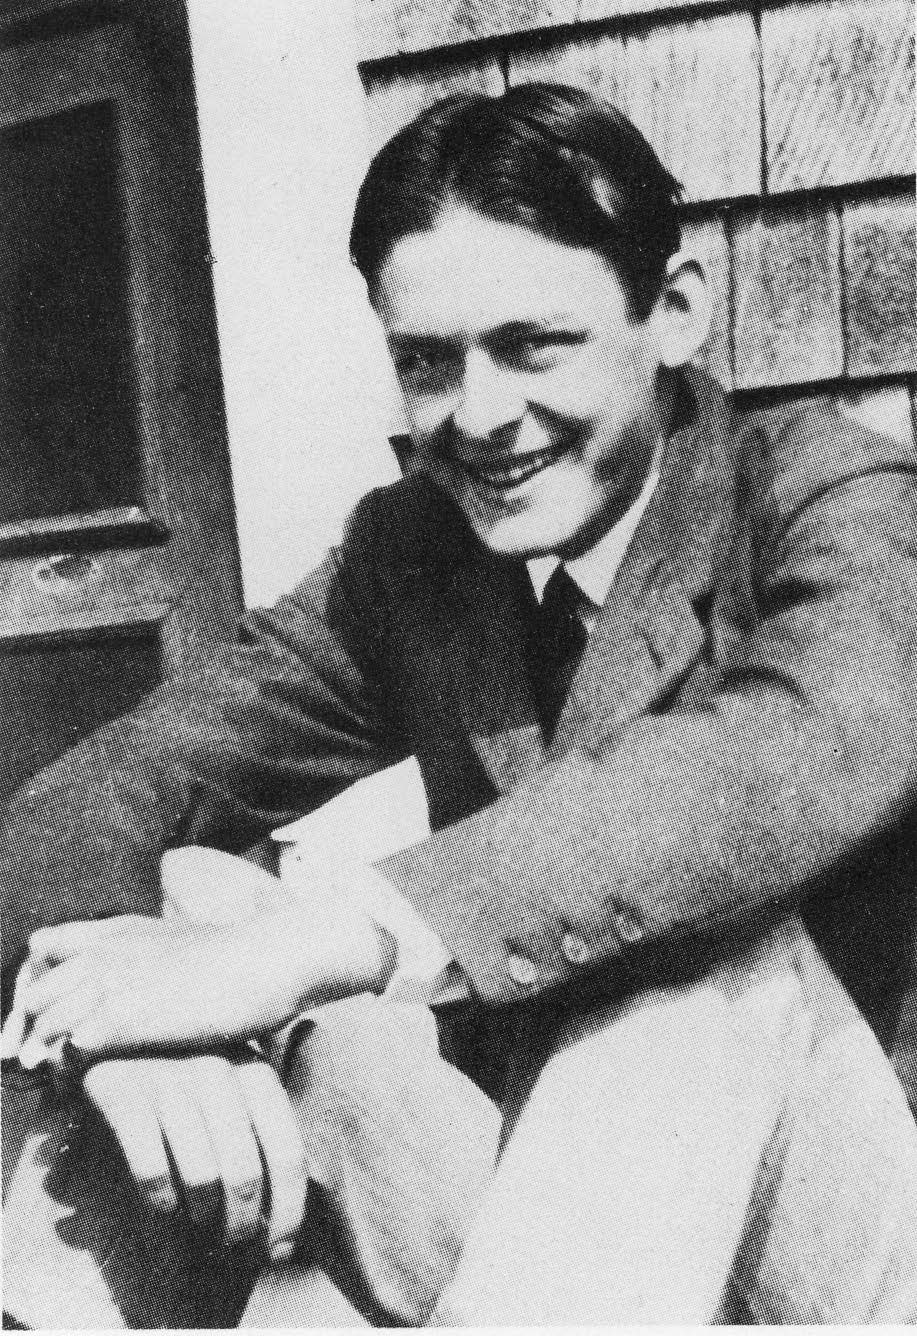 8. Eliot, age 22 (1910)